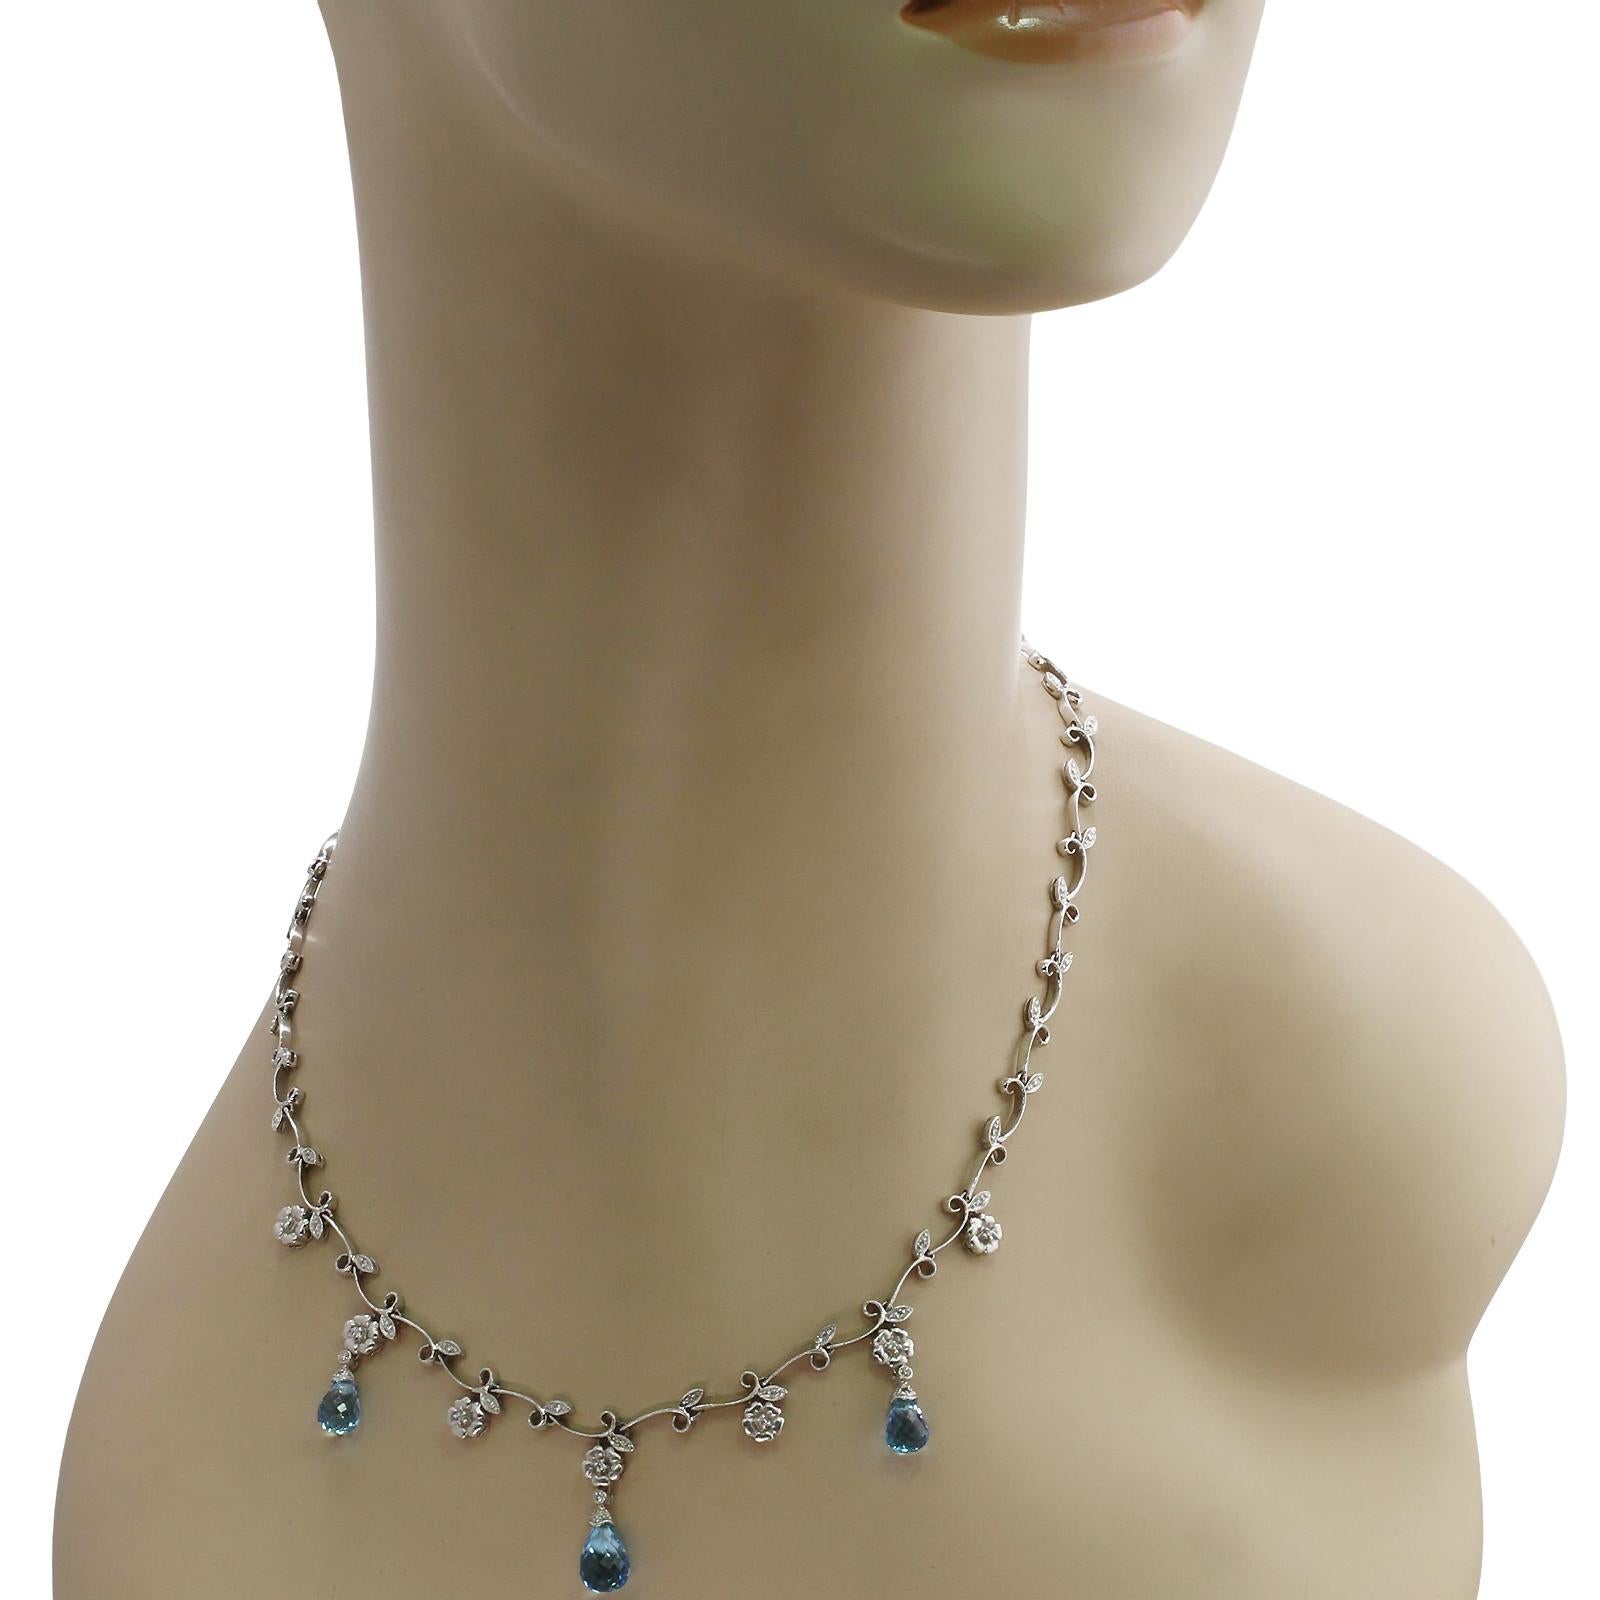 Diese wunderschöne Girlanden-Halskette zeigt ein Design aus Blättern und Blumen, das aus 14-karätigem Weißgold gefertigt und mit blauen Topas-Briolletes und 30 runden Diamanten mit einem geschätzten Gewicht von 0,25 bis 0,30 Karat verziert ist.